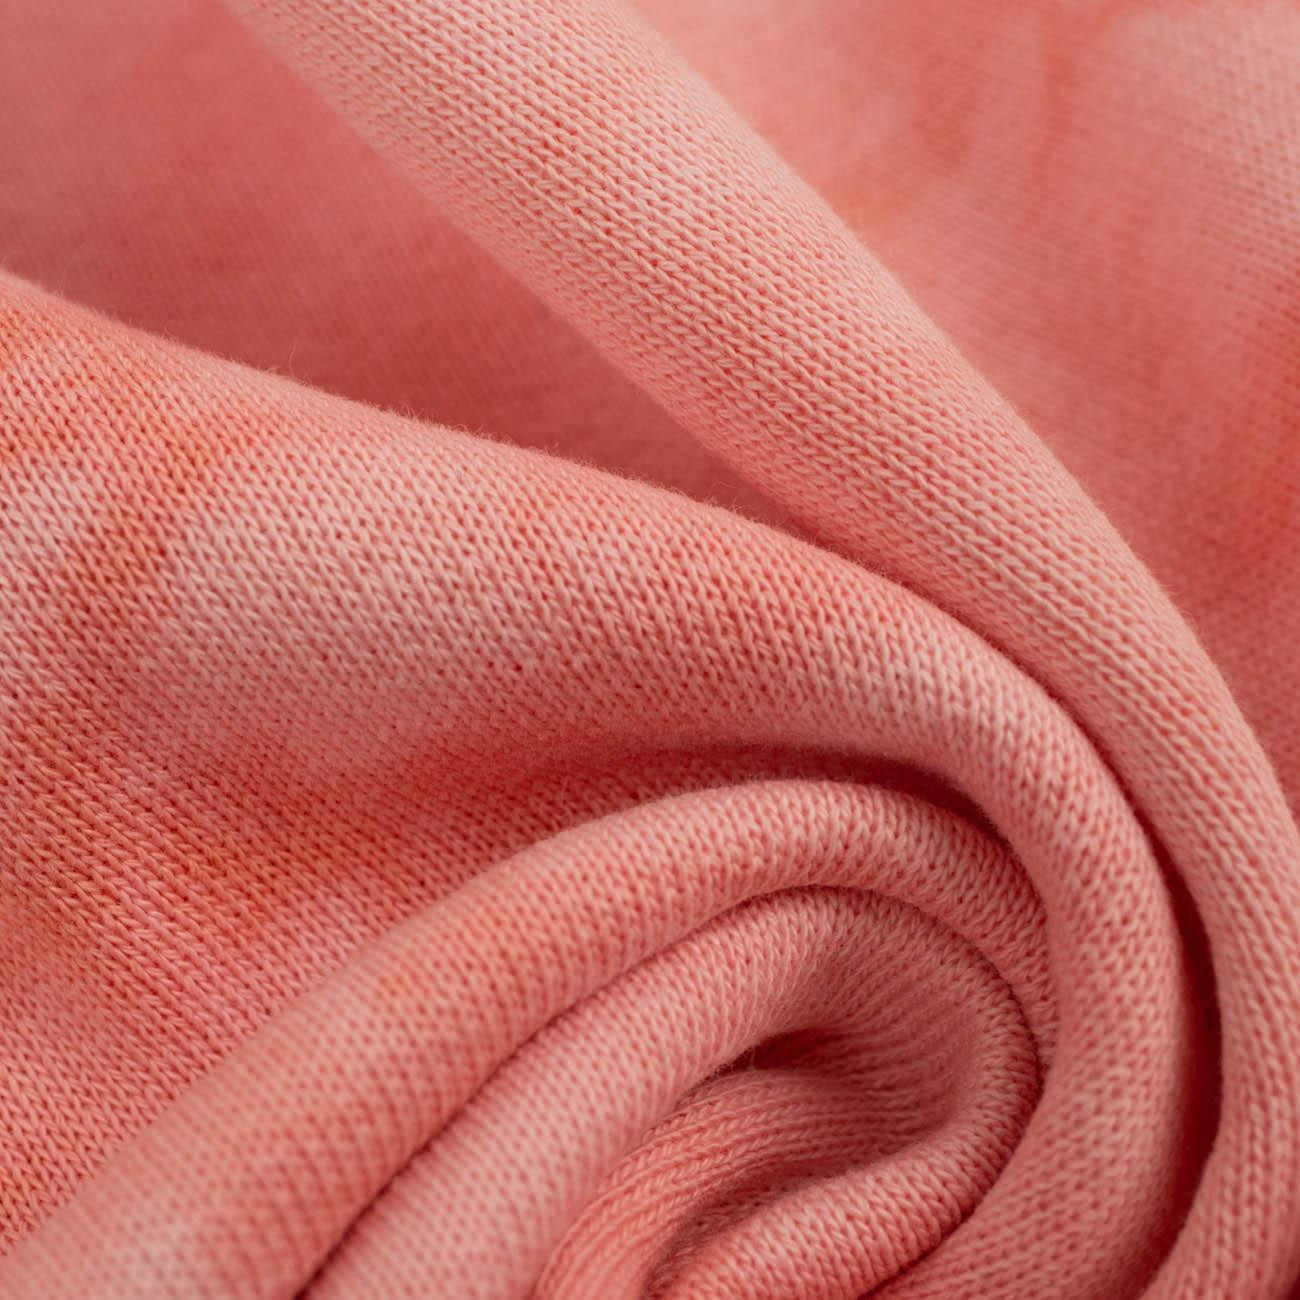 BATIK pat. 2 / pink - brushed knitwear with elastane